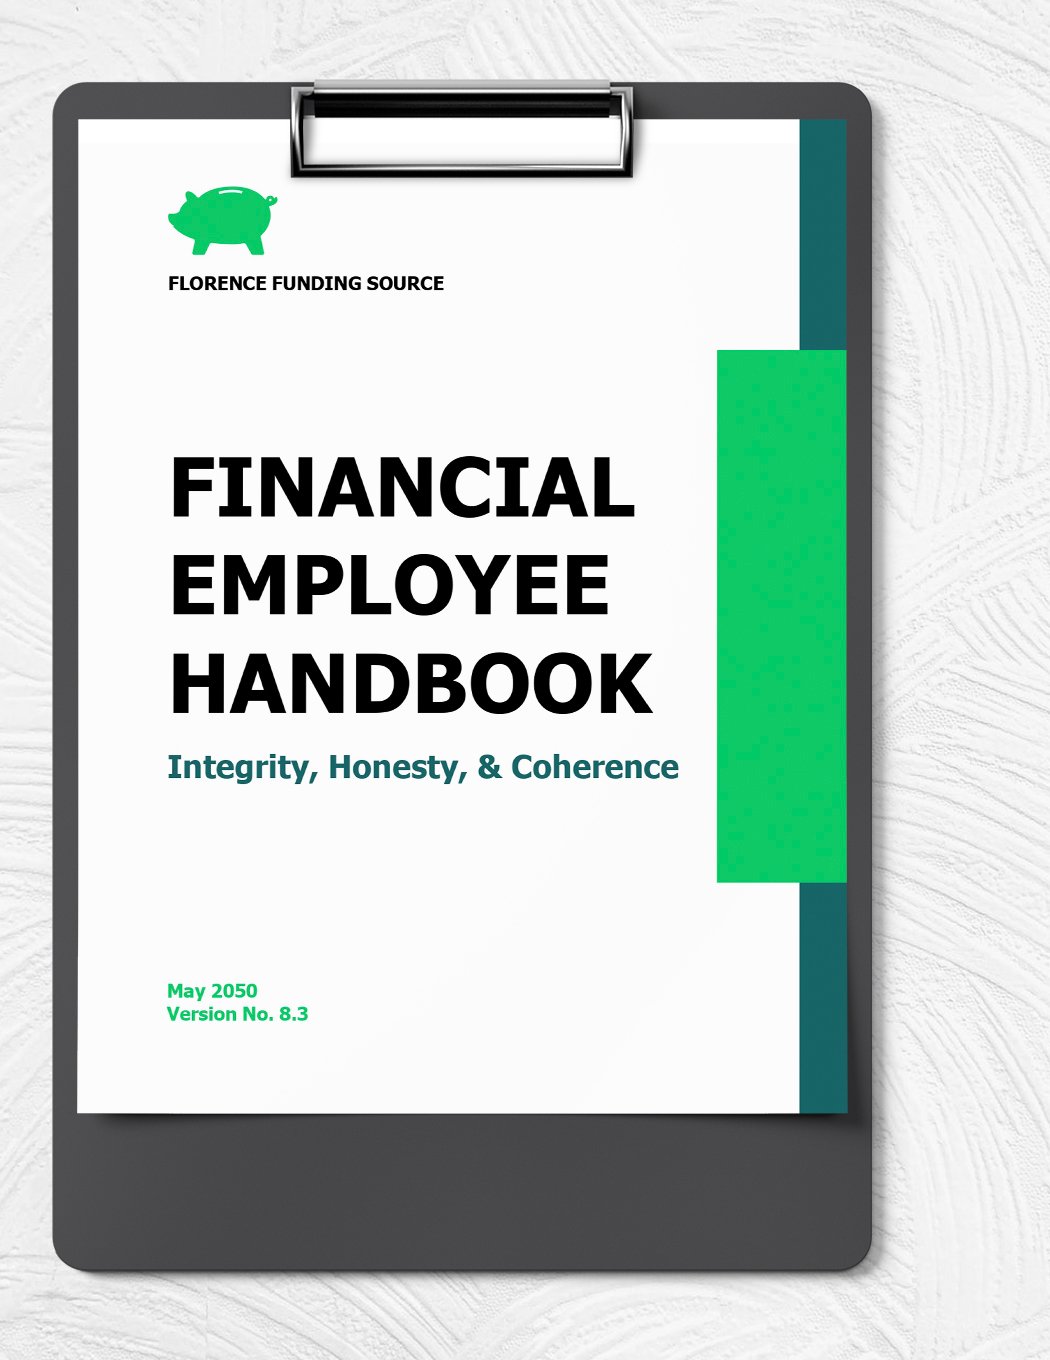 Financial Employee Handbook Template